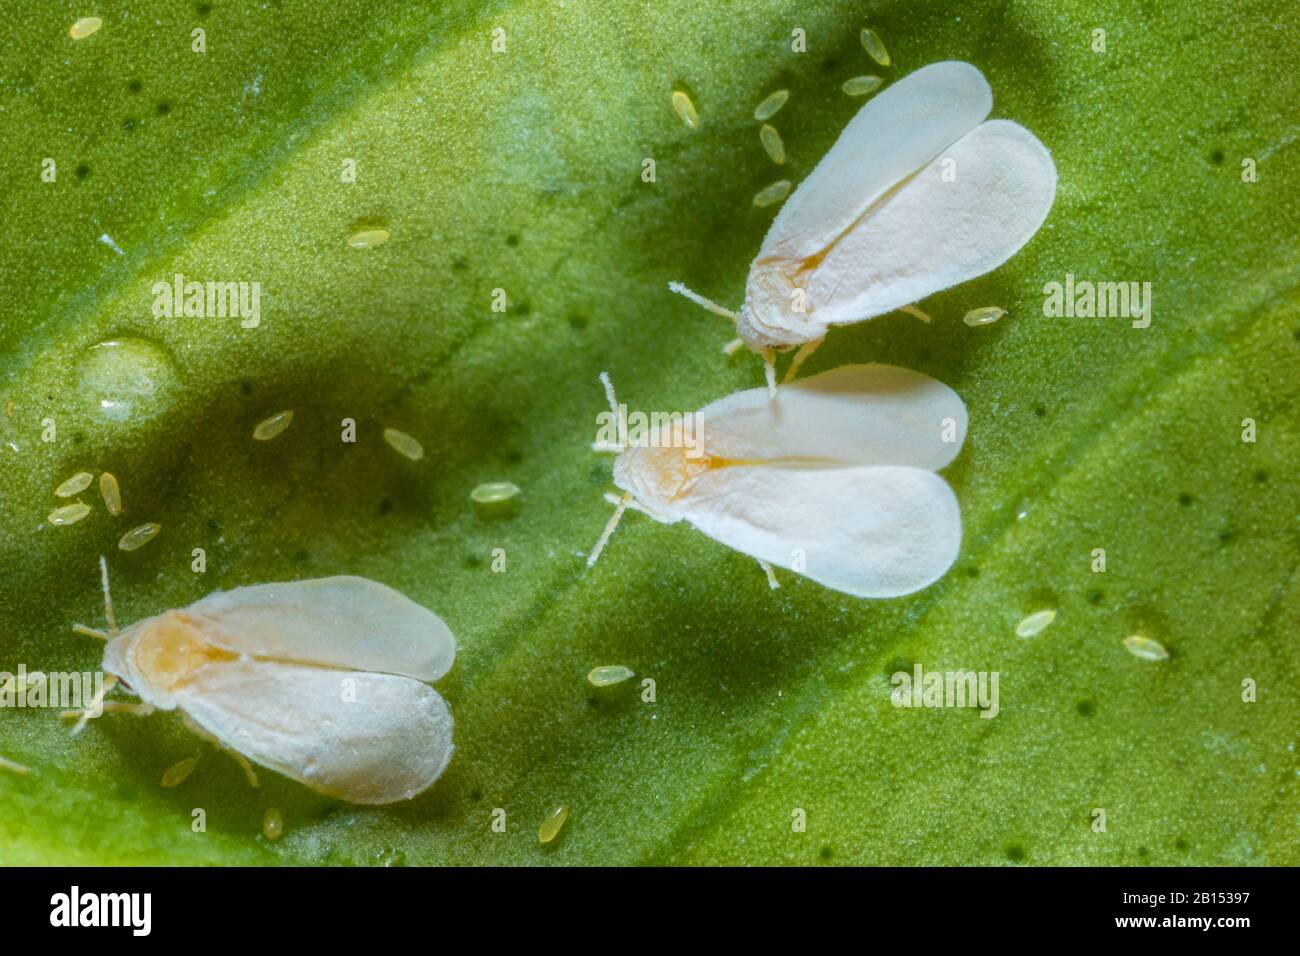 Serra bianca (Trialeurodes vaporariorum), tre mosche che depongono le uova su una foglia di limone, vista dall'alto Foto Stock